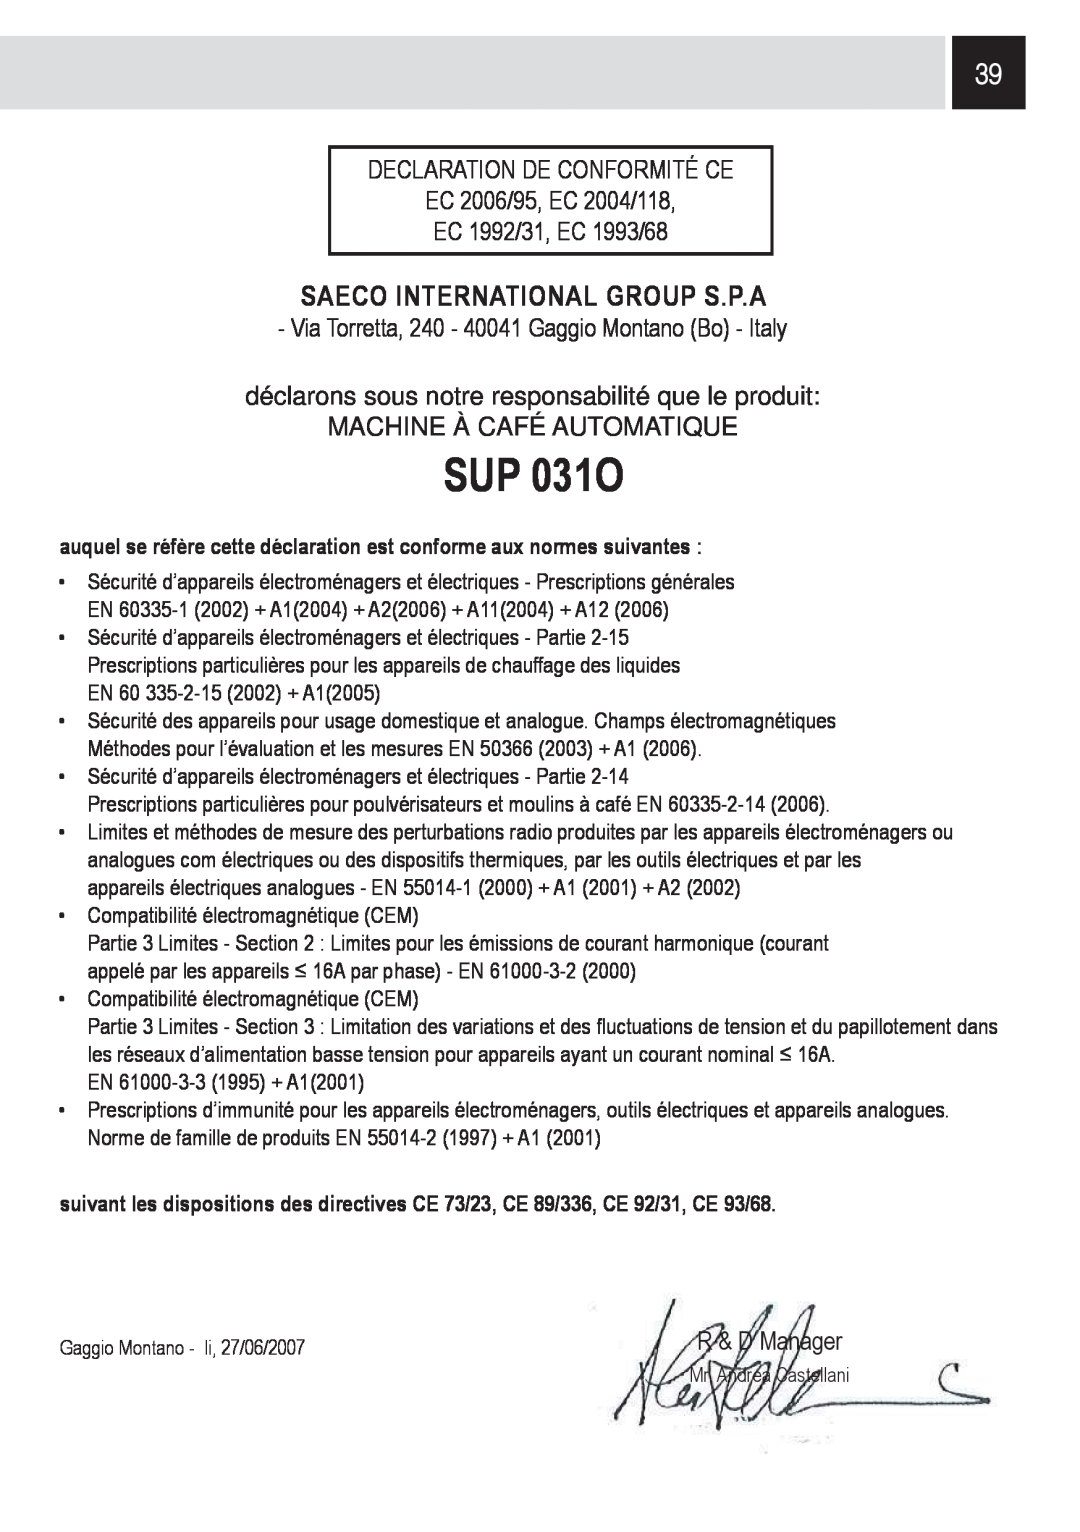 Saeco Coffee Makers SUP0310 manual SUP 031O, Saeco International Group S.P.A, Declaration De Conformité Ce 